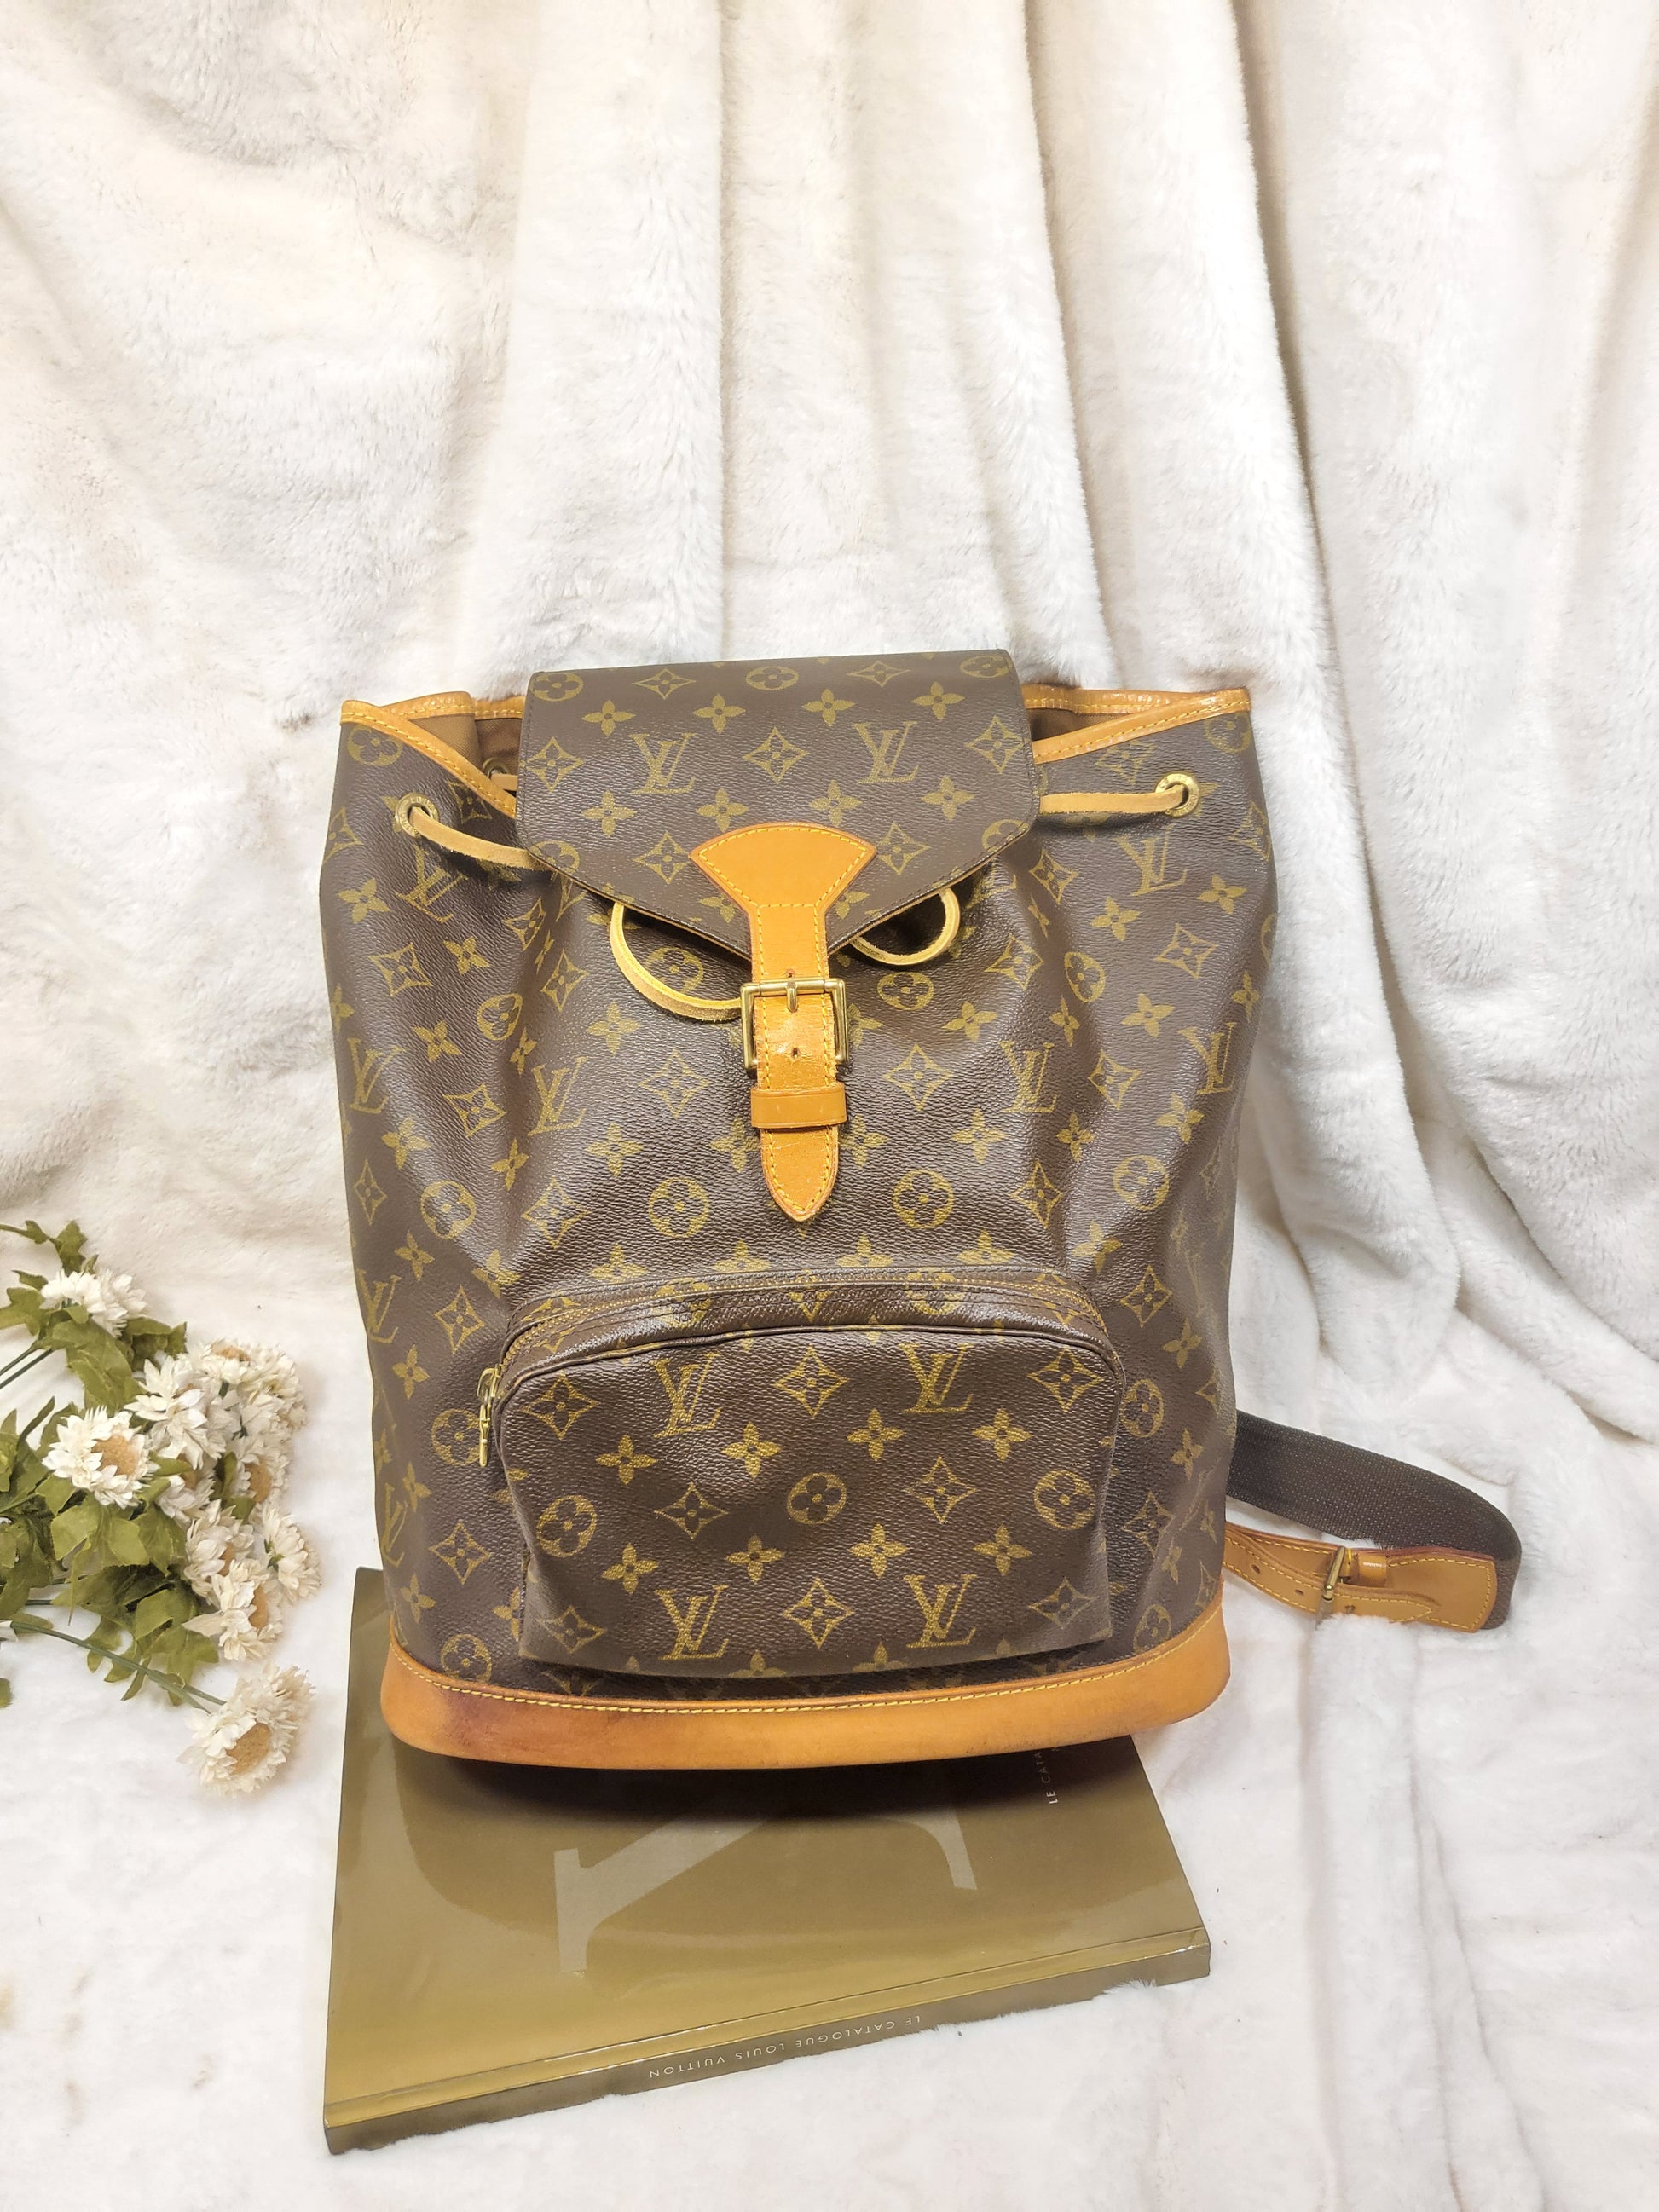 Louis Vuitton, Bags, Beautiful Authentic Louis Vuitton Monogram  Montsouris Gm Backpack